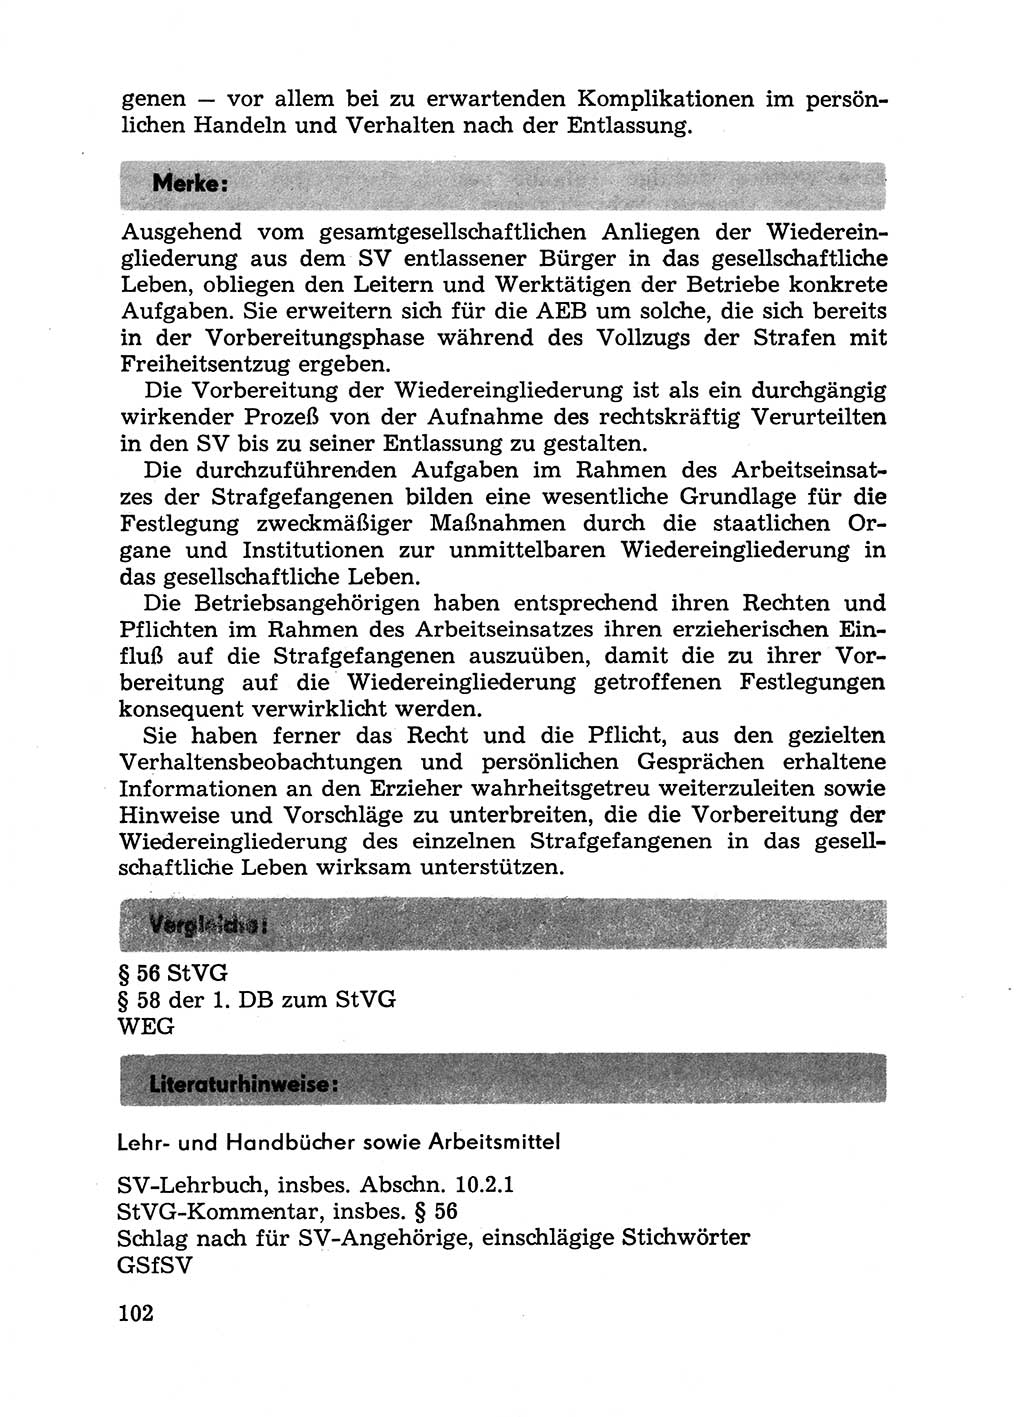 Handbuch für Betriebsangehörige, Abteilung Strafvollzug (SV) [Ministerium des Innern (MdI) Deutsche Demokratische Republik (DDR)] 1981, Seite 102 (Hb. BA Abt. SV MdI DDR 1981, S. 102)